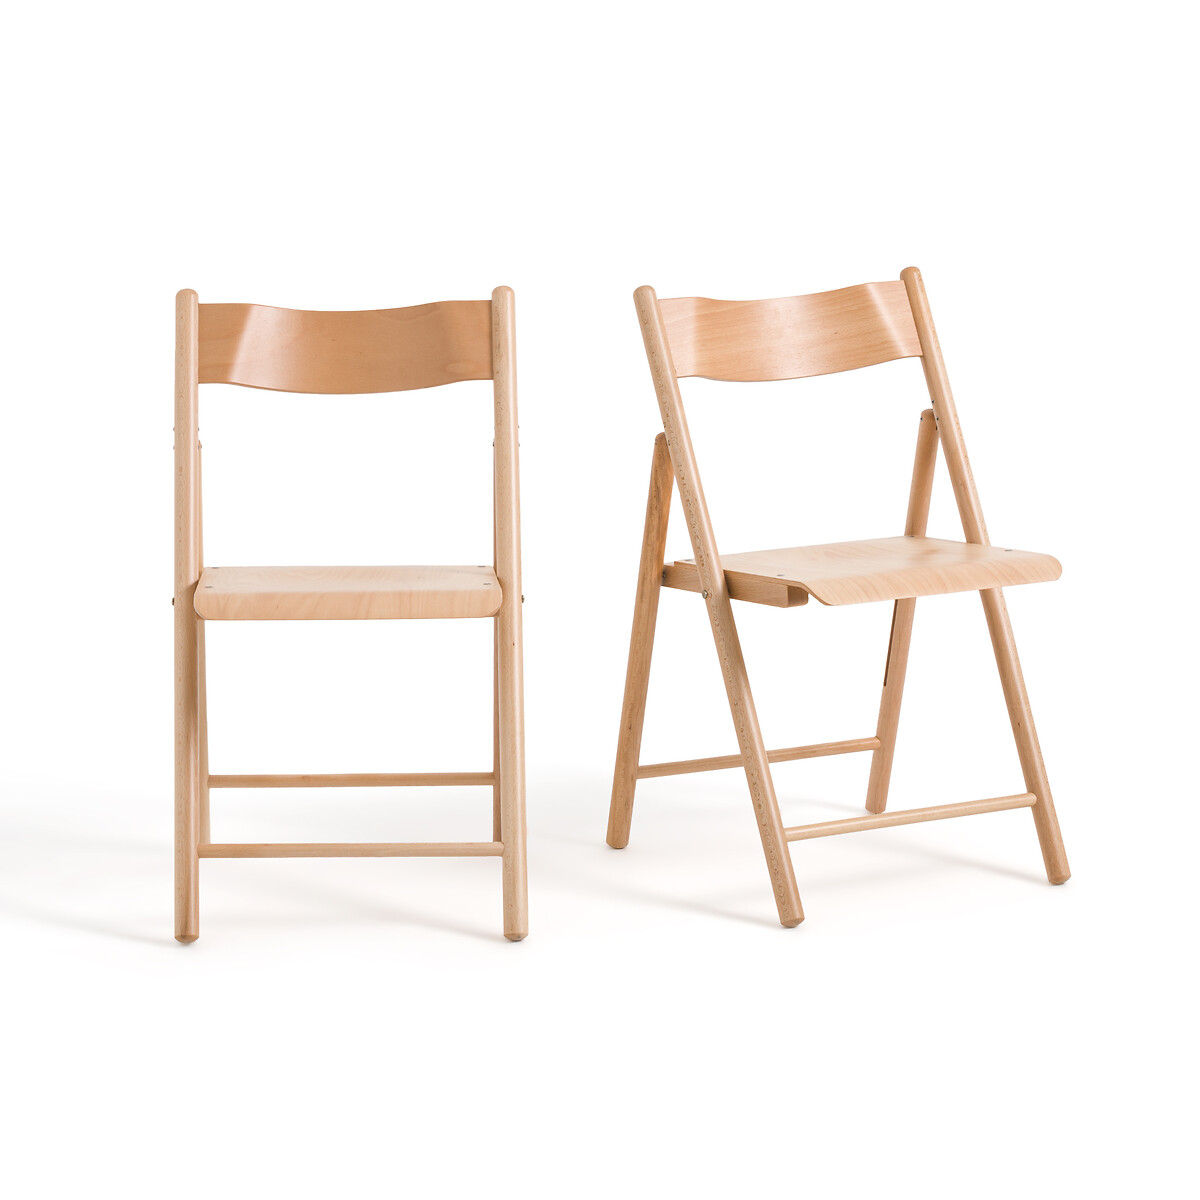 Комплект из 2 стульев складных Из бука Panni единый размер бежевый